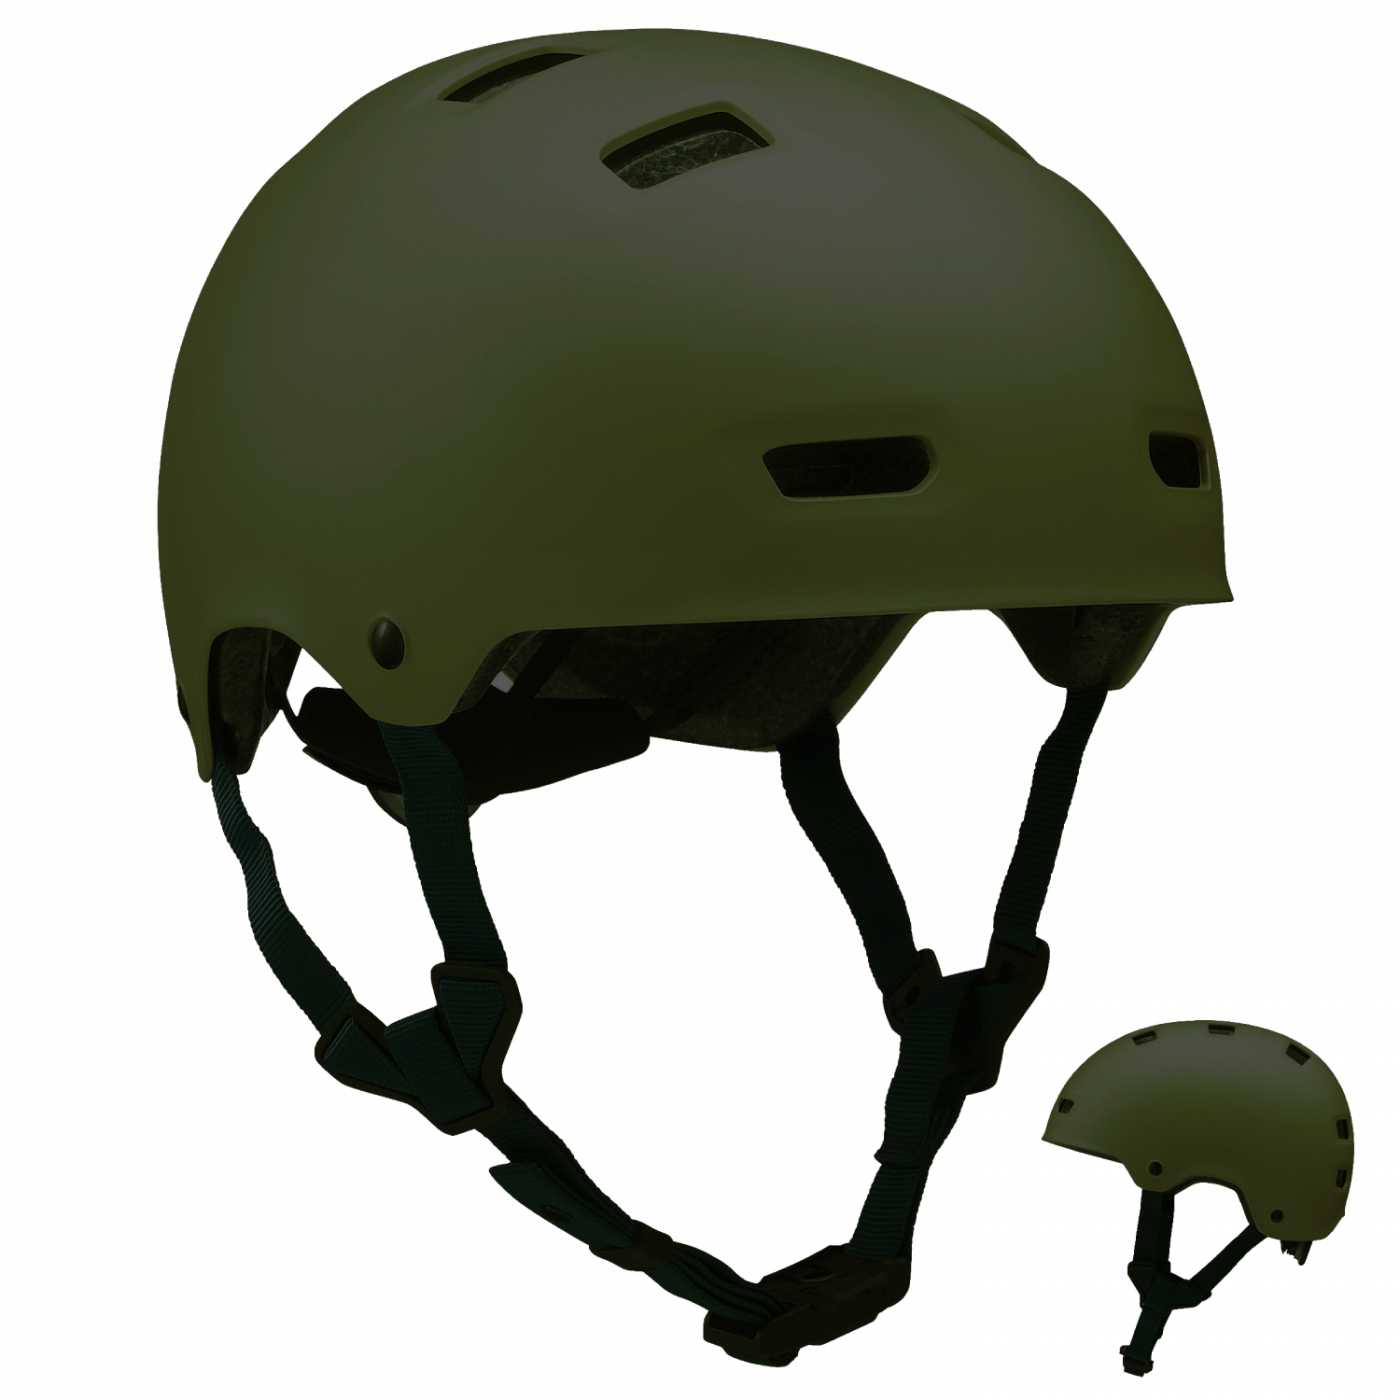 Велосипедный шлем PNG